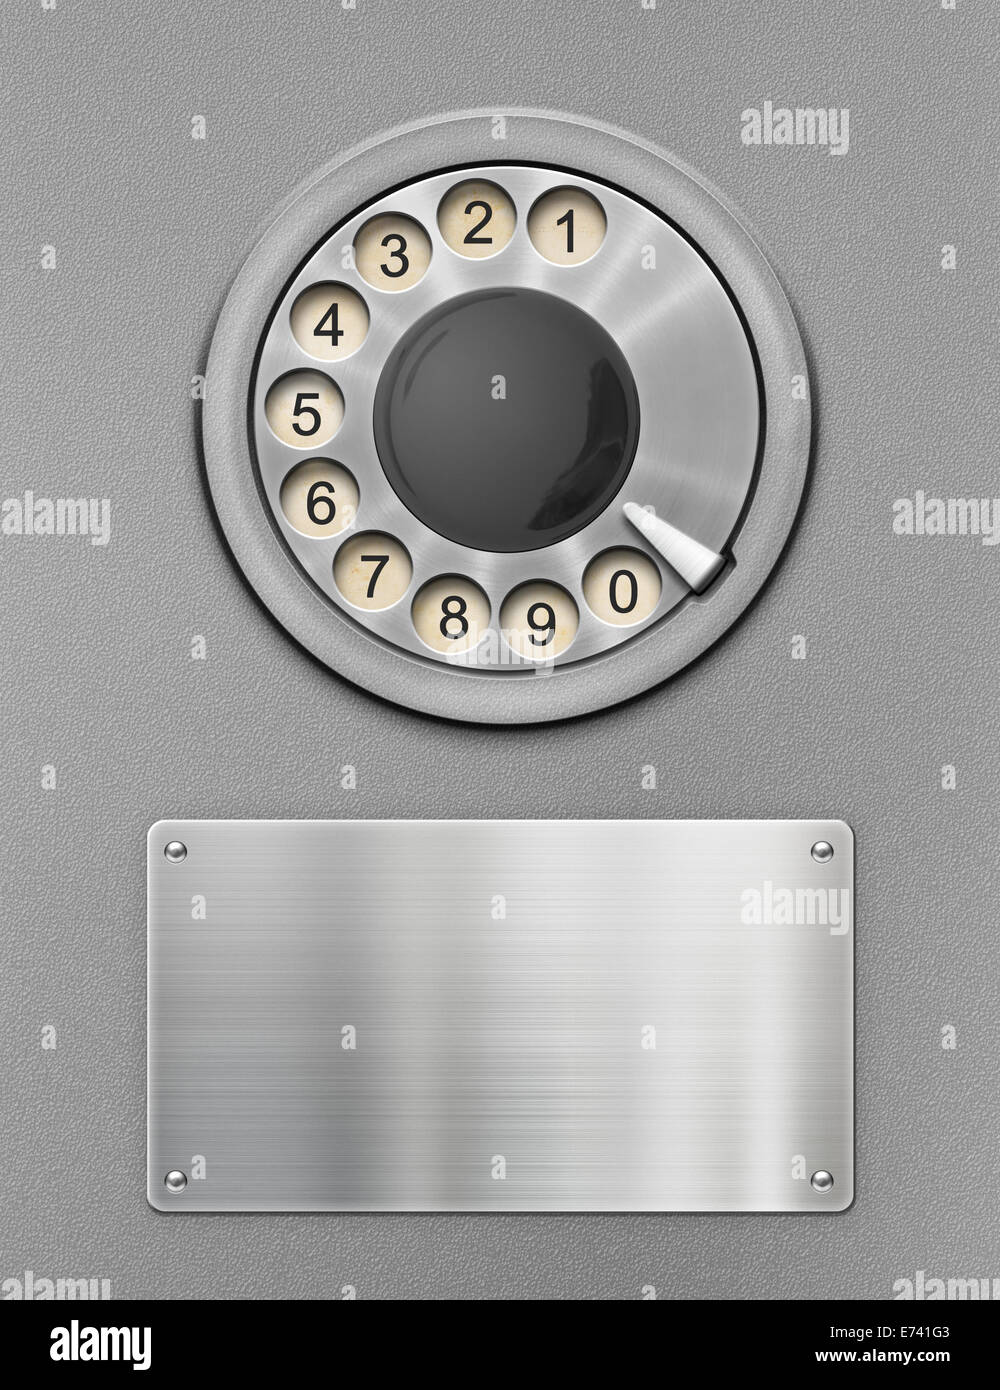 Téléphone public rétro cadran rotatif et plaque de métal Banque D'Images